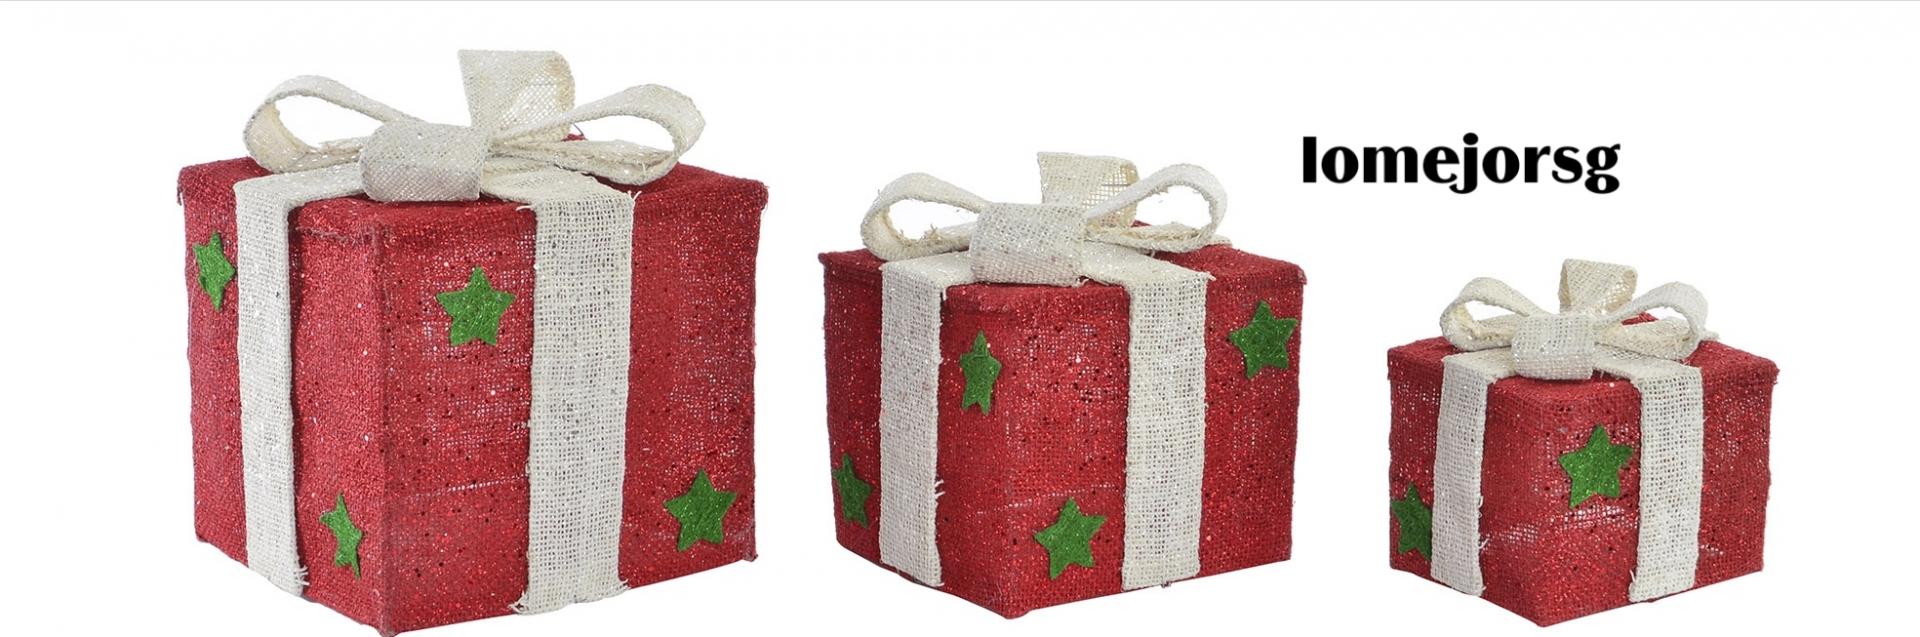 juego-tres-cajas-regalos-rojas-lazos-beig-con-luz-led-item-NV-151109/1-decoracion-regalo-navidad-lomejorsg.jpg